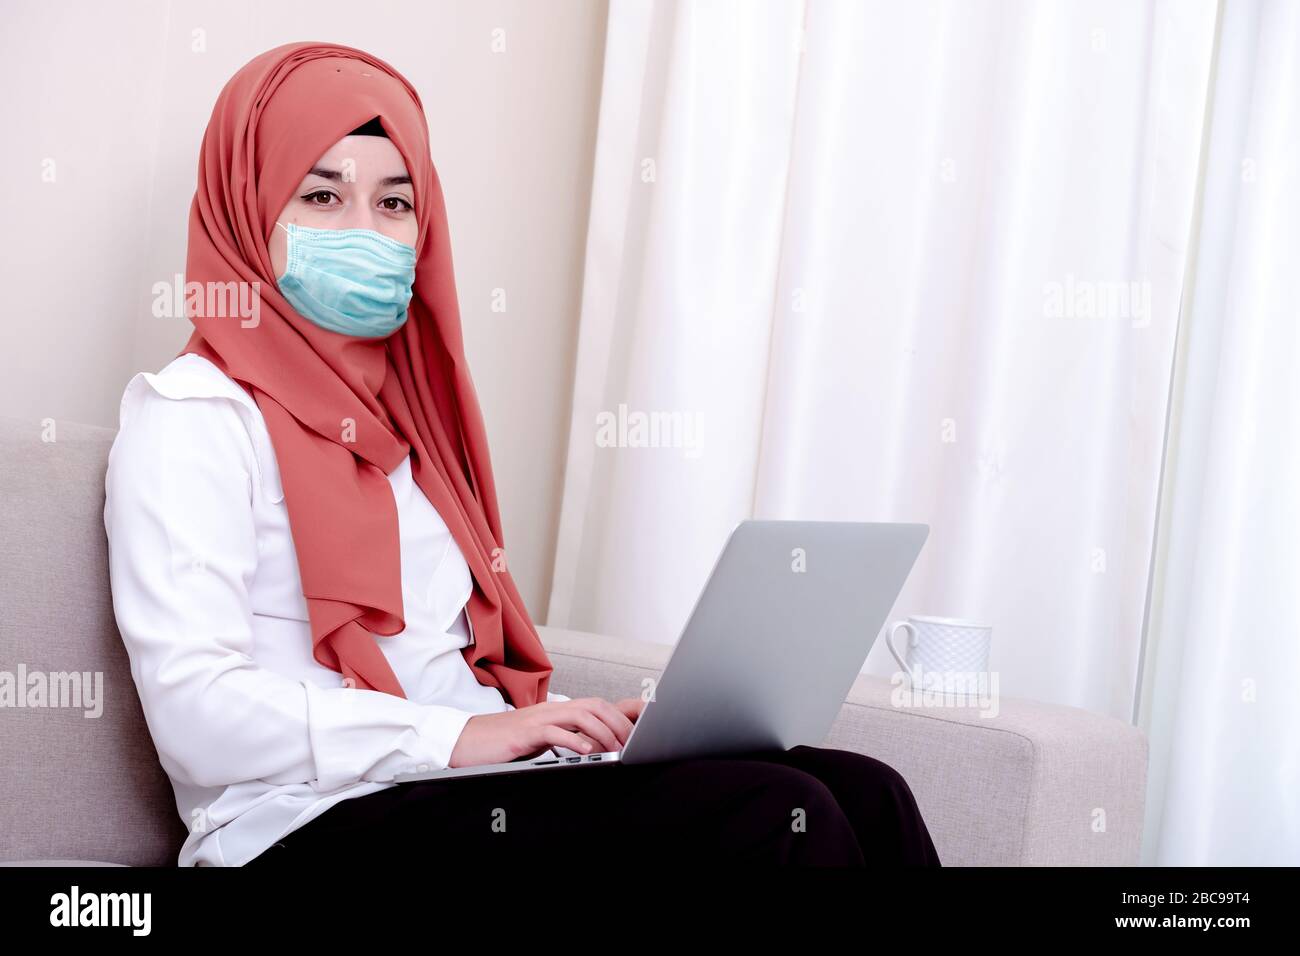 Ragazza musulmana che indossa una maschera chirurgica per la protezione. Donna hijab prendere una maschera per coronavirus o COVID-19 epidemia o pandemica Foto Stock